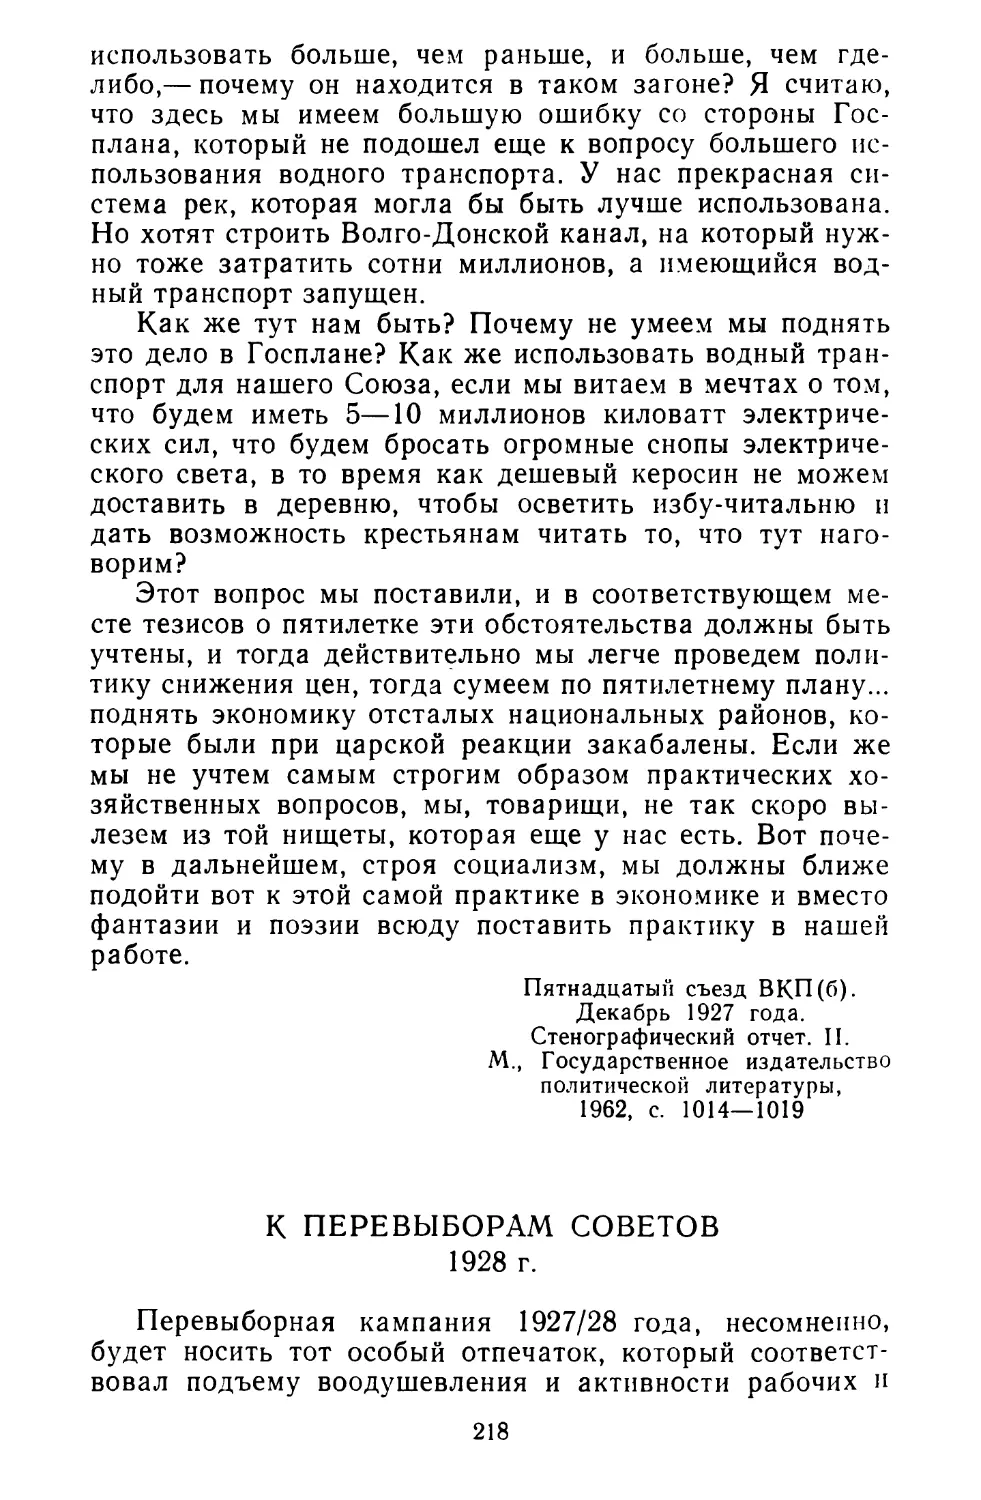 К перевыборам Советов. 1928 г.